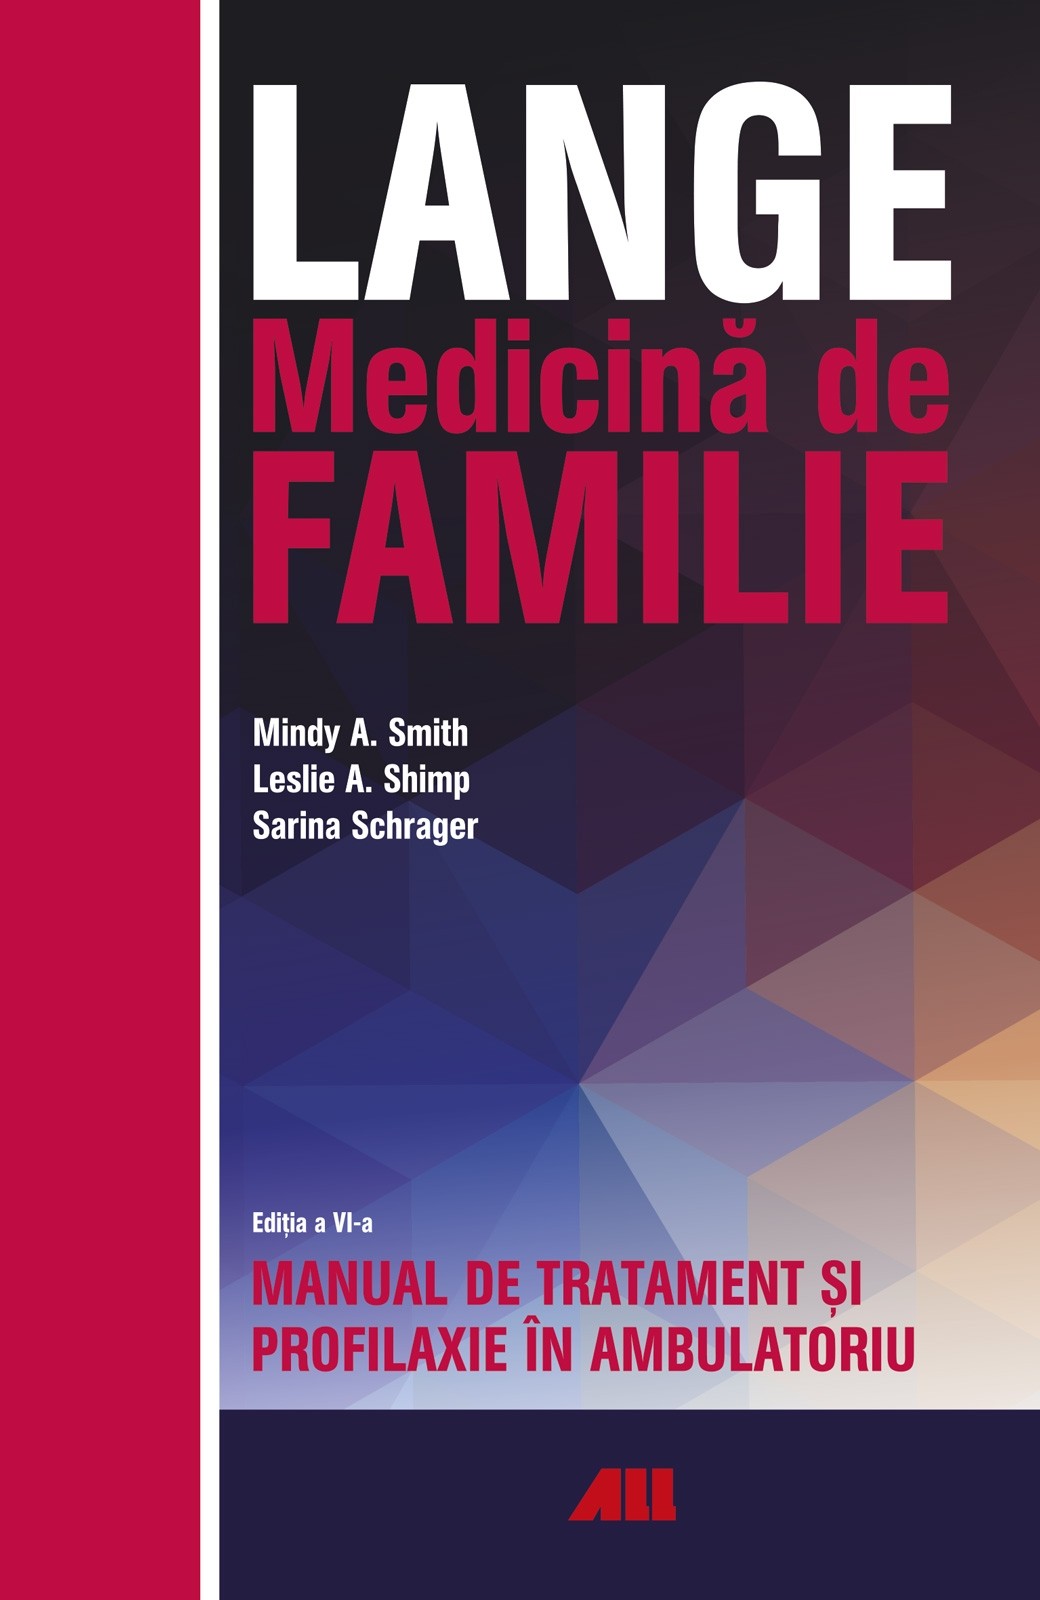 LANGE. Medicina de familie | Leslie A. Shimp, Mindy A. Smith, Sarina Schrager imagine 2022